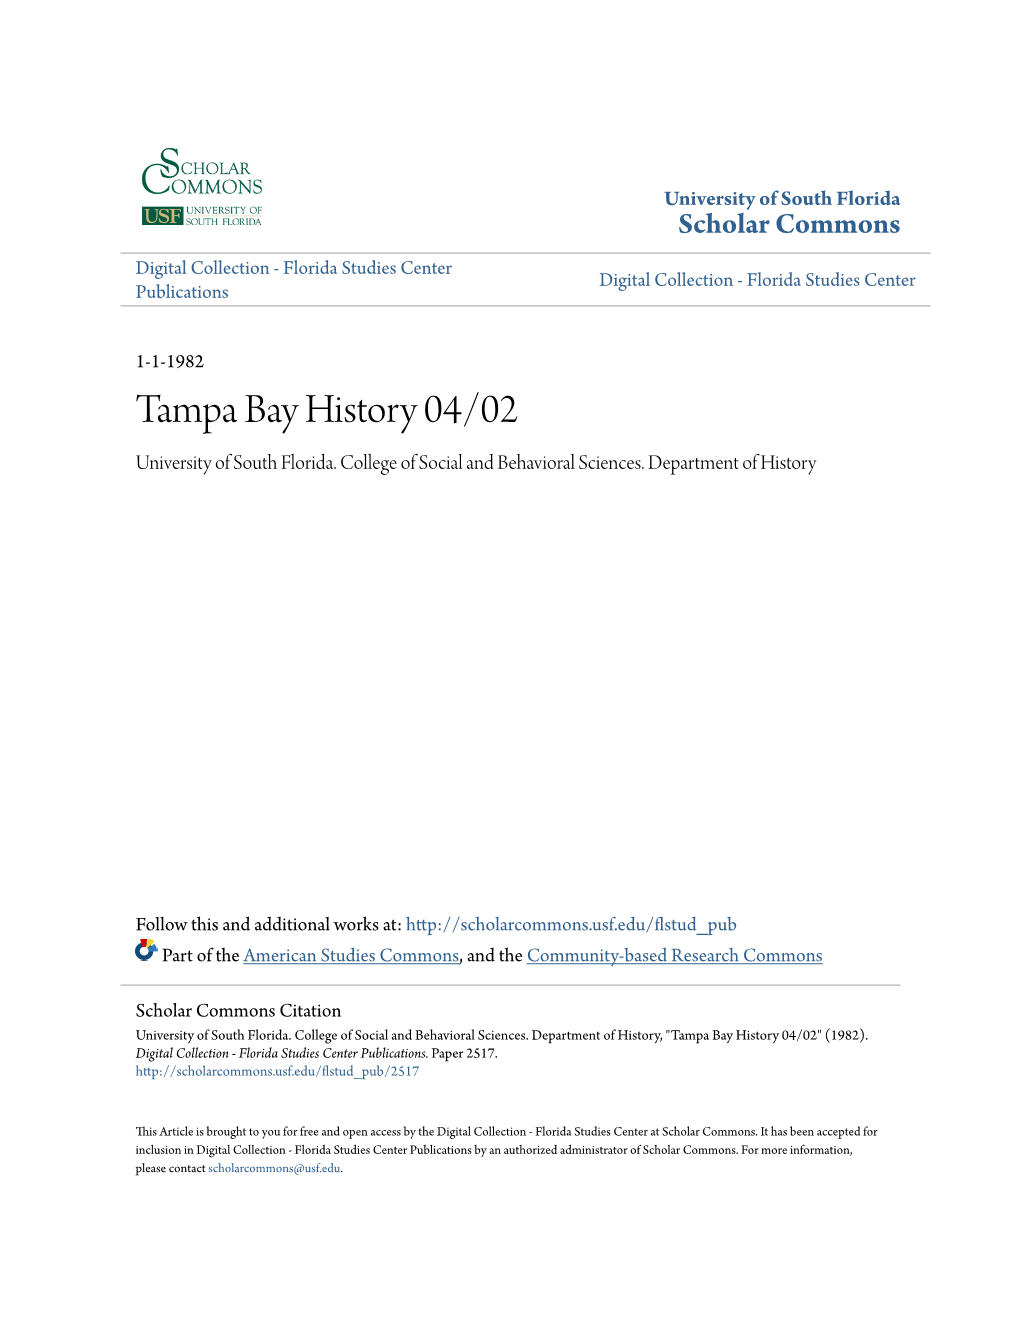 Tampa Bay History 04/02 University of South Florida